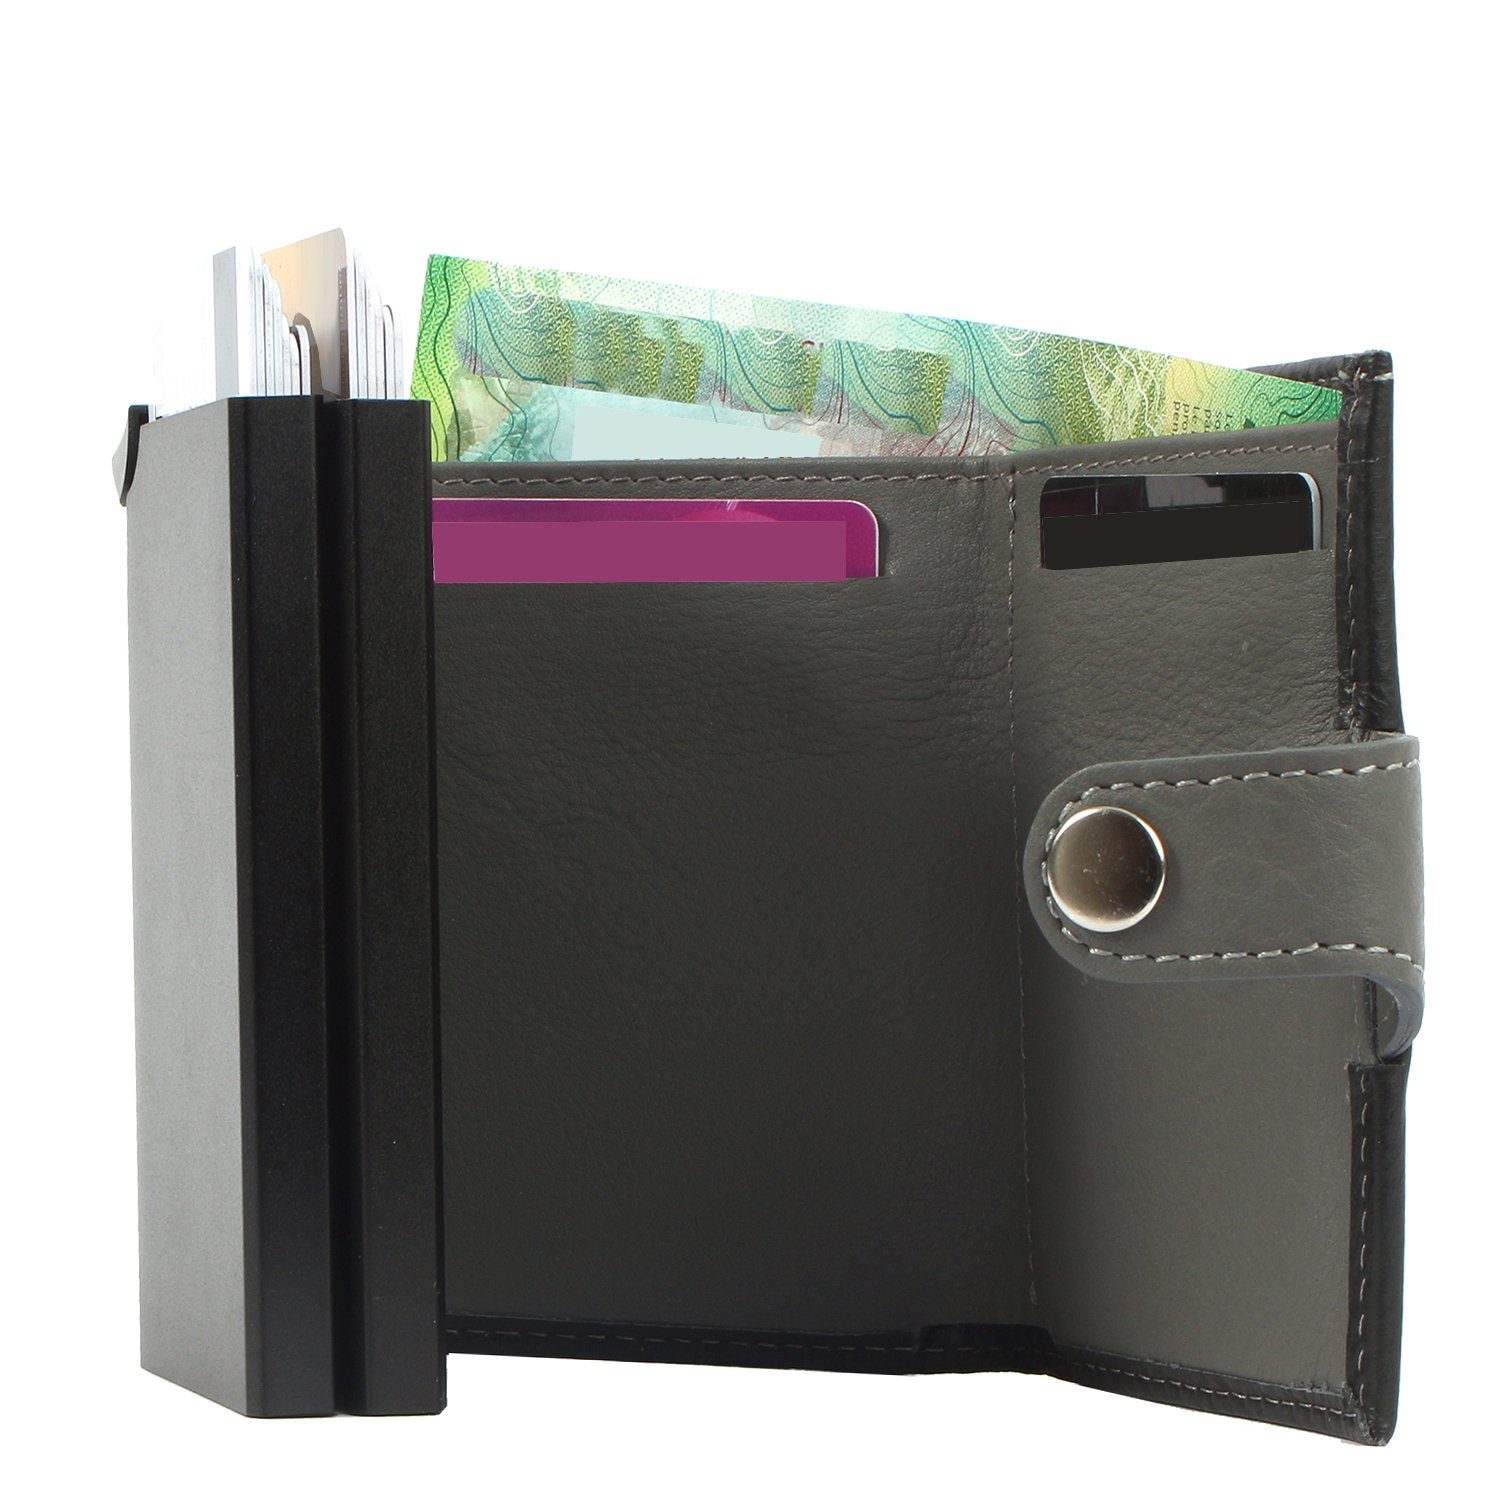 Leder darkbrown Mini Geldbörse leather, Kreditkartenbörse Upcycling aus RFID noonyu Margelisch double